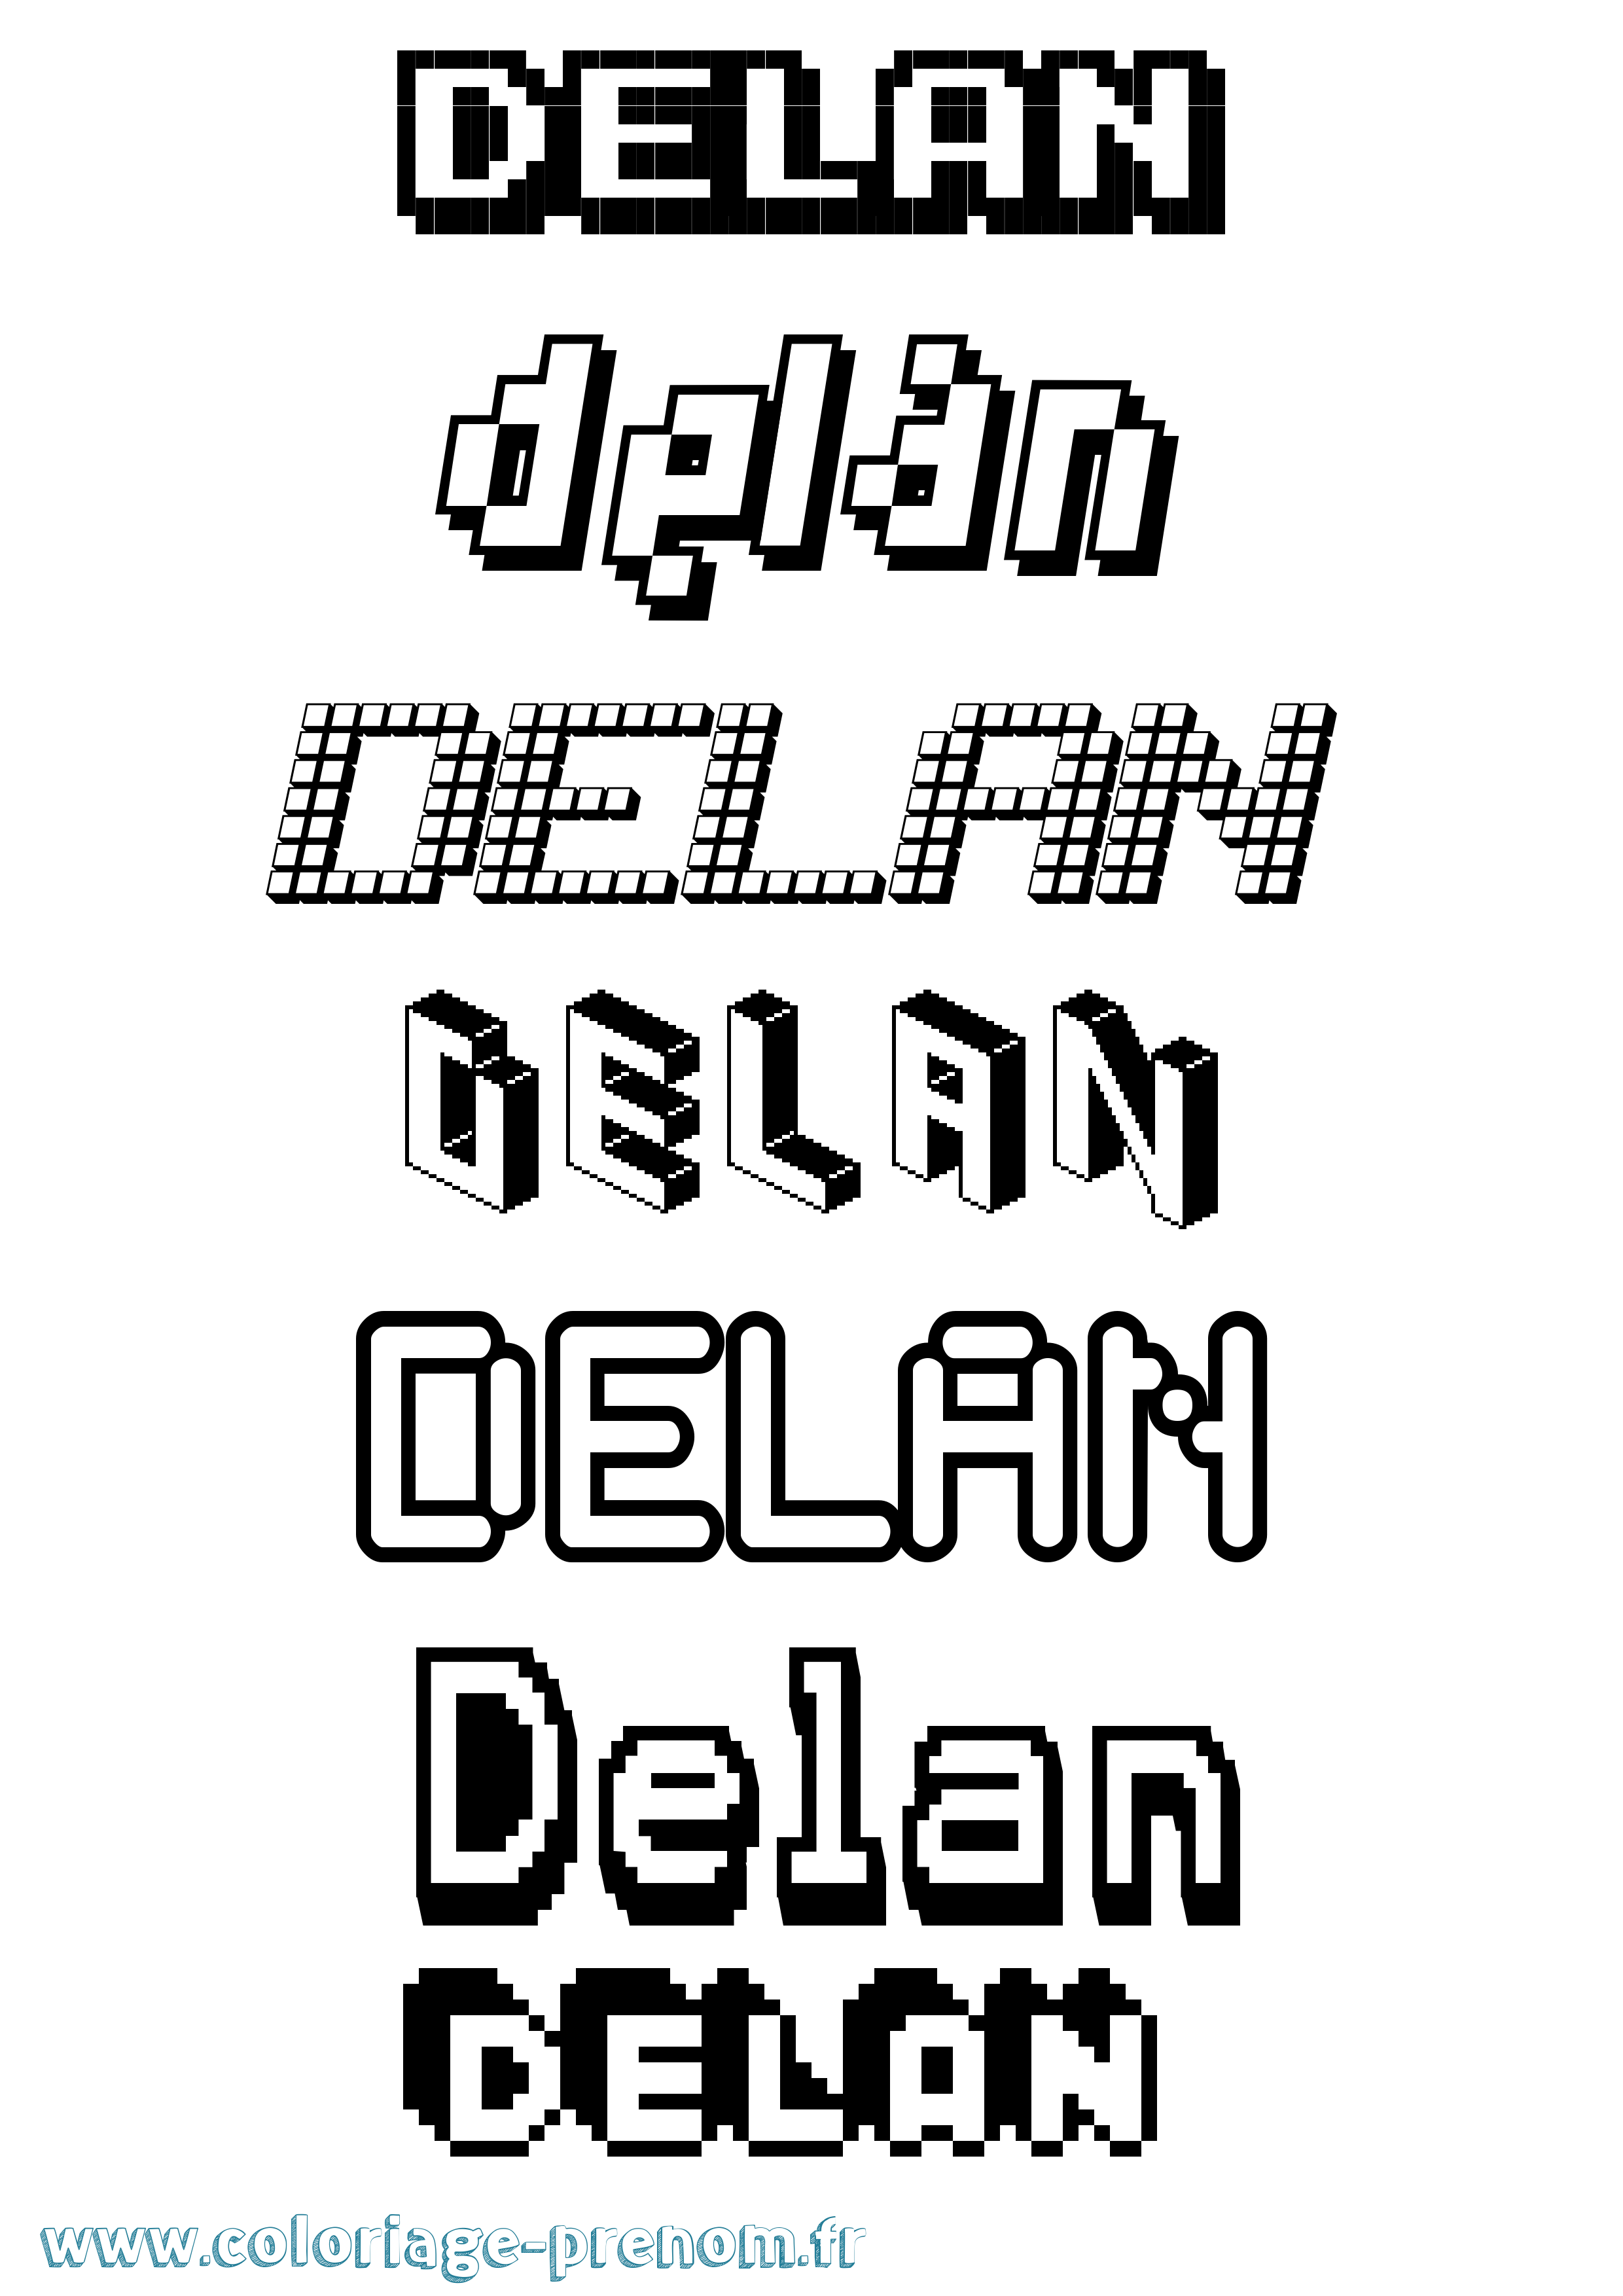 Coloriage prénom Delan Pixel